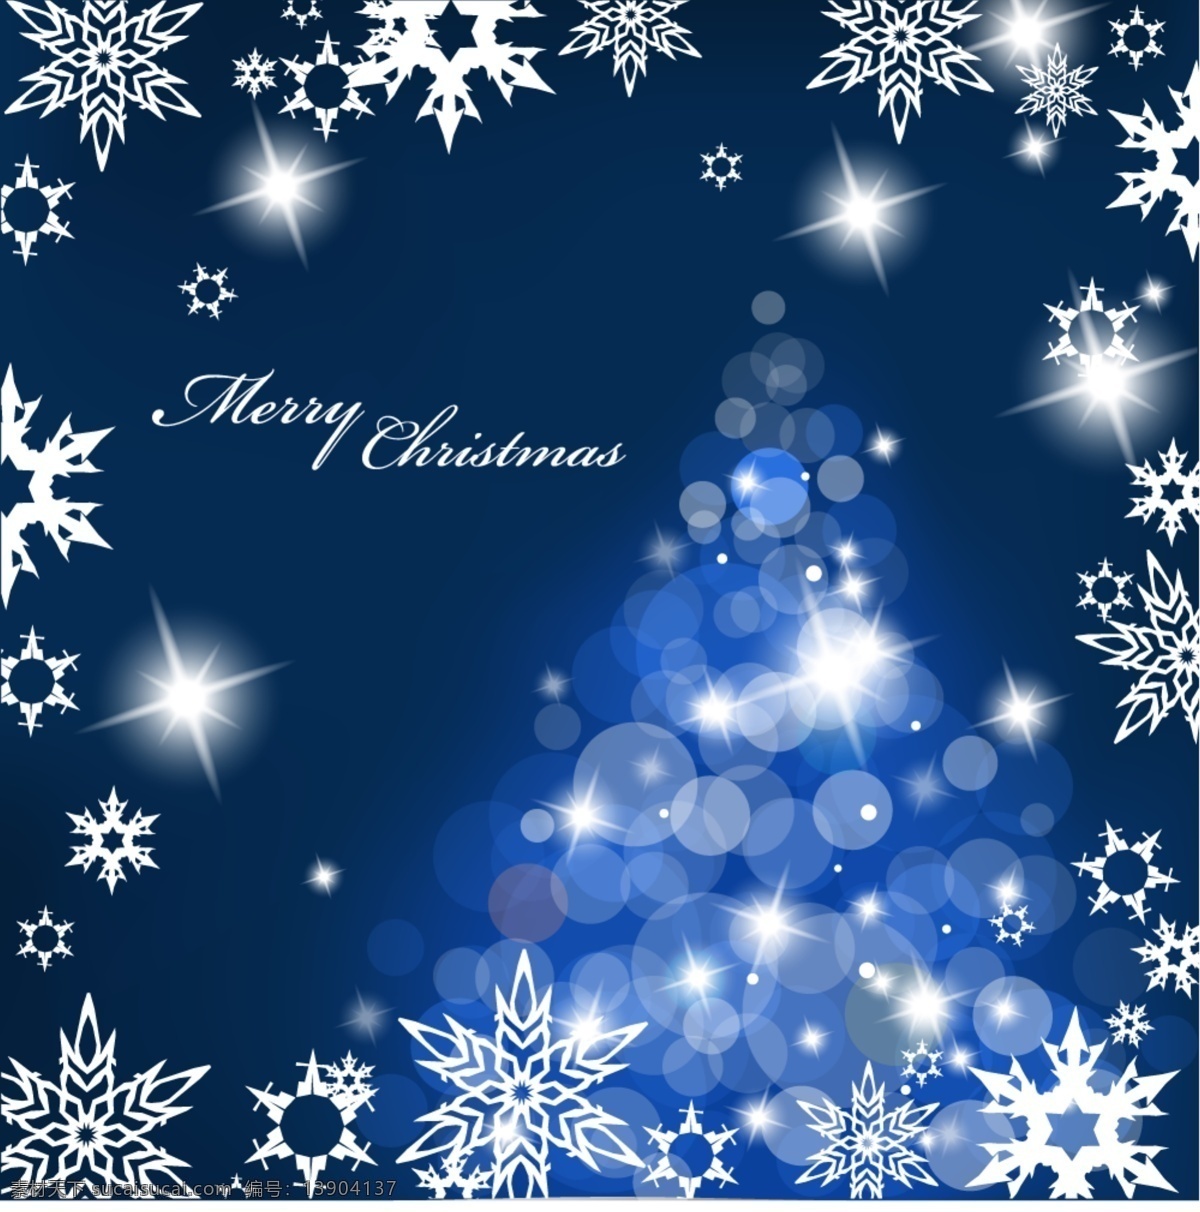 圣诞节 花纹 圣诞树 卡片 矢量图 蓝色背景 圣诞节贺卡 圣诞节花纹 星星 雪花 圣诞树卡片 闪耀星光 节日素材 其他节日